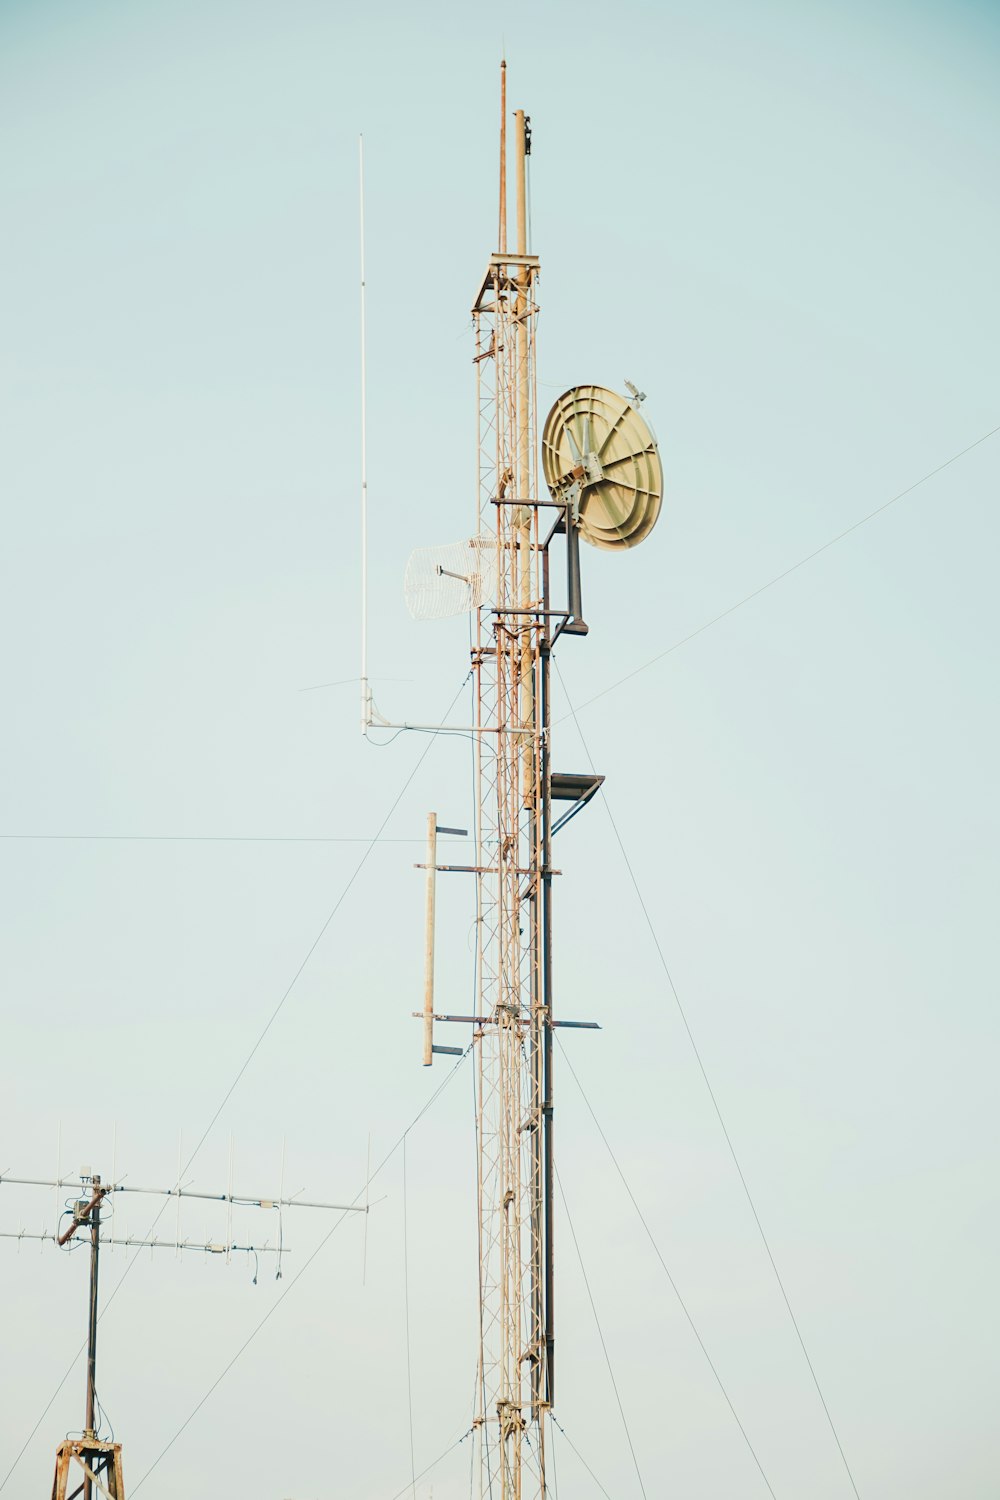 Ein sehr hoher Turm mit vielen Antennen darauf